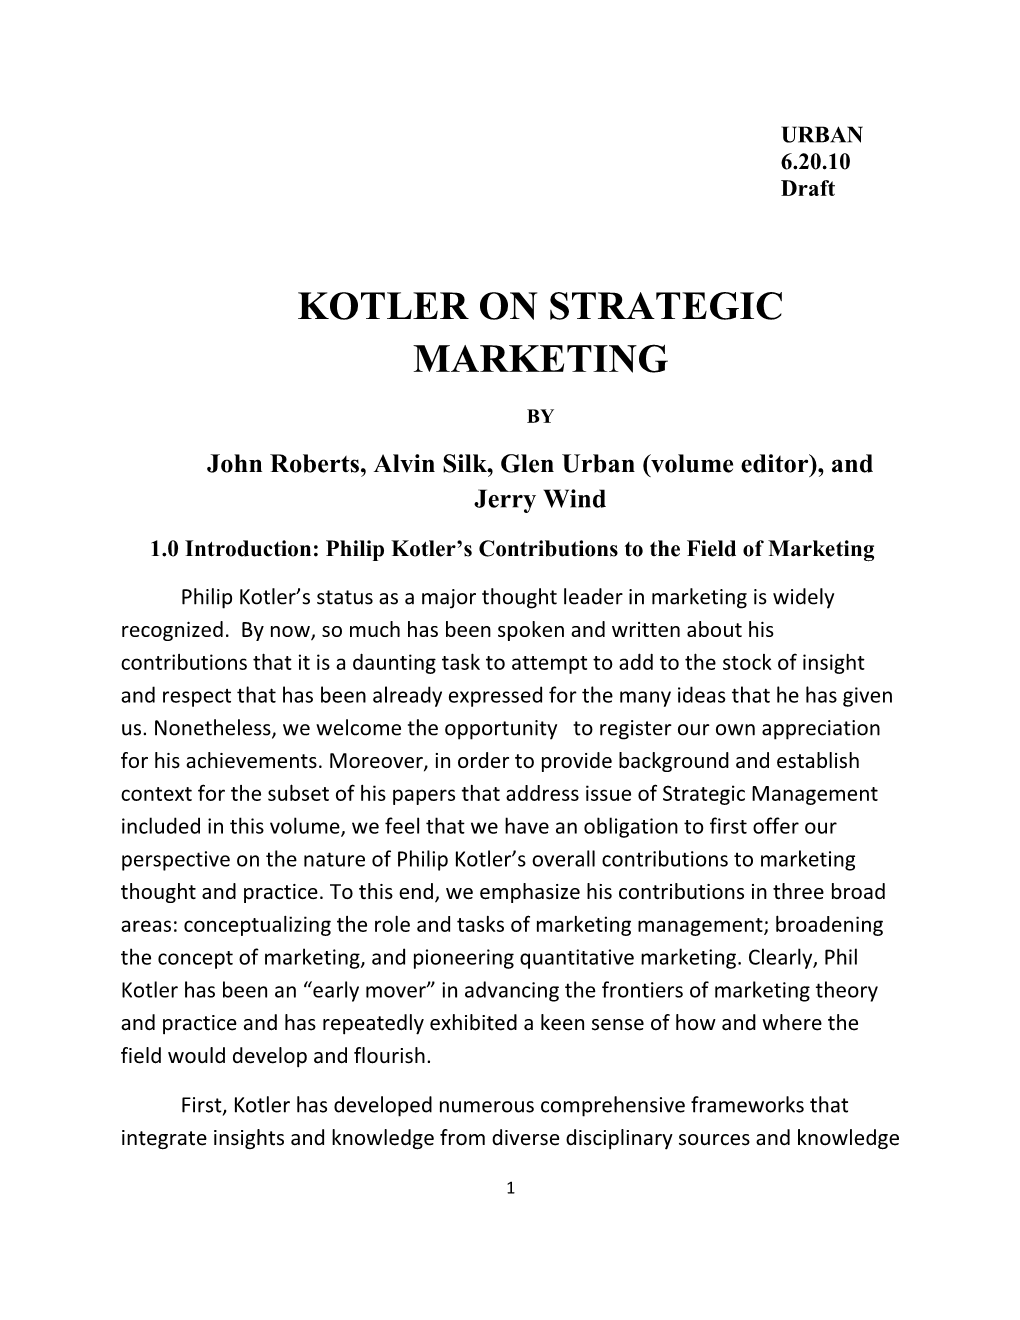 Kotler on Strategic Marketing